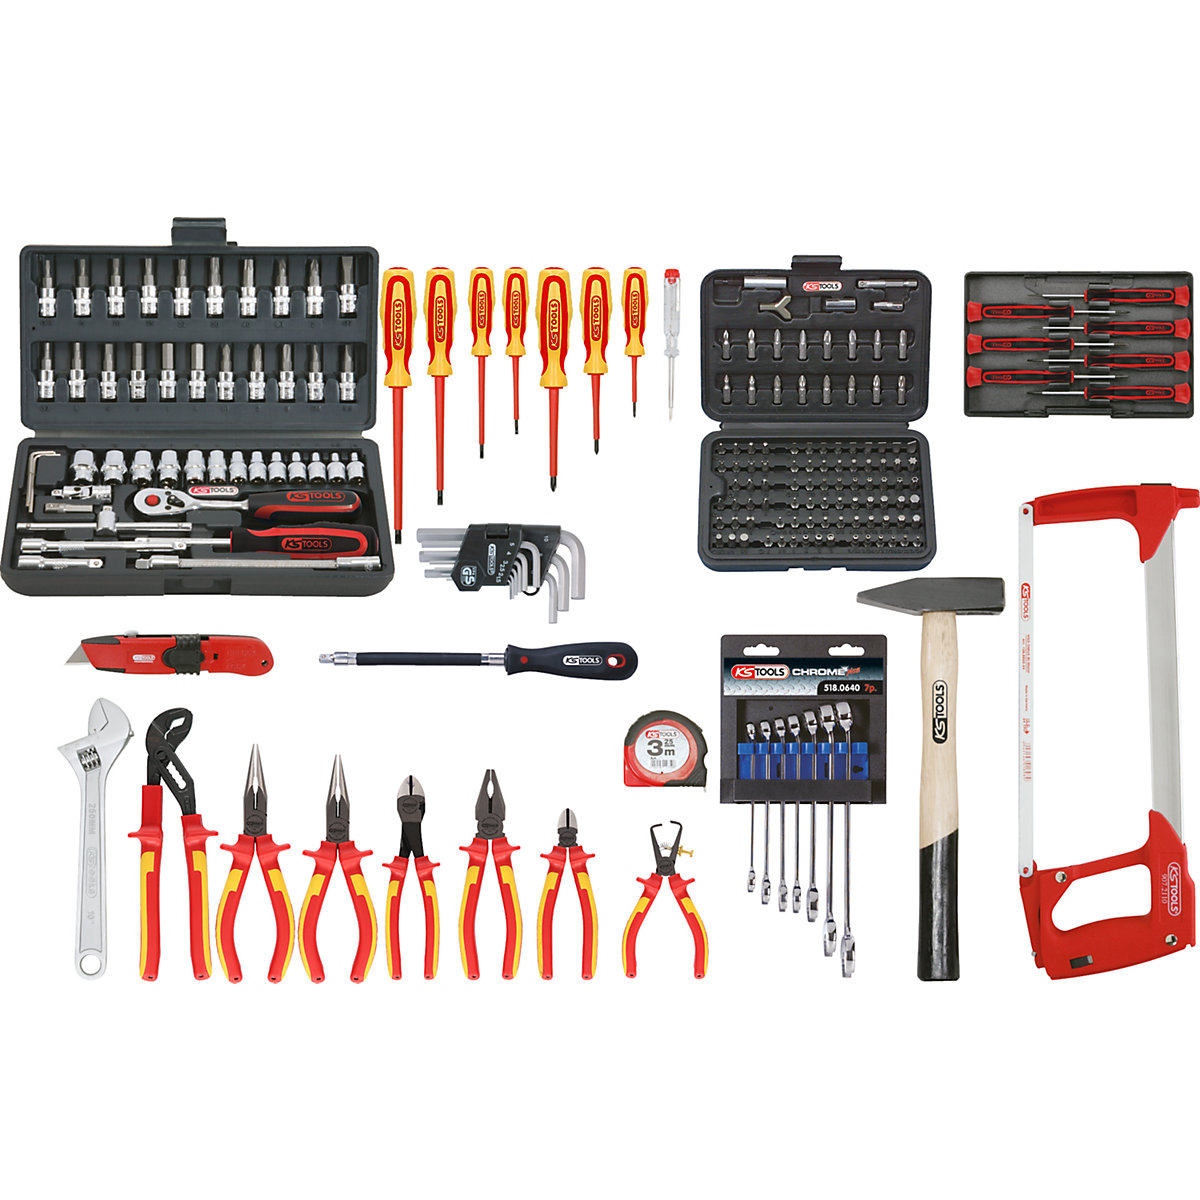 Valise d'électricien Premium Max – KS Tools, 195 éléments, multifonctionnel